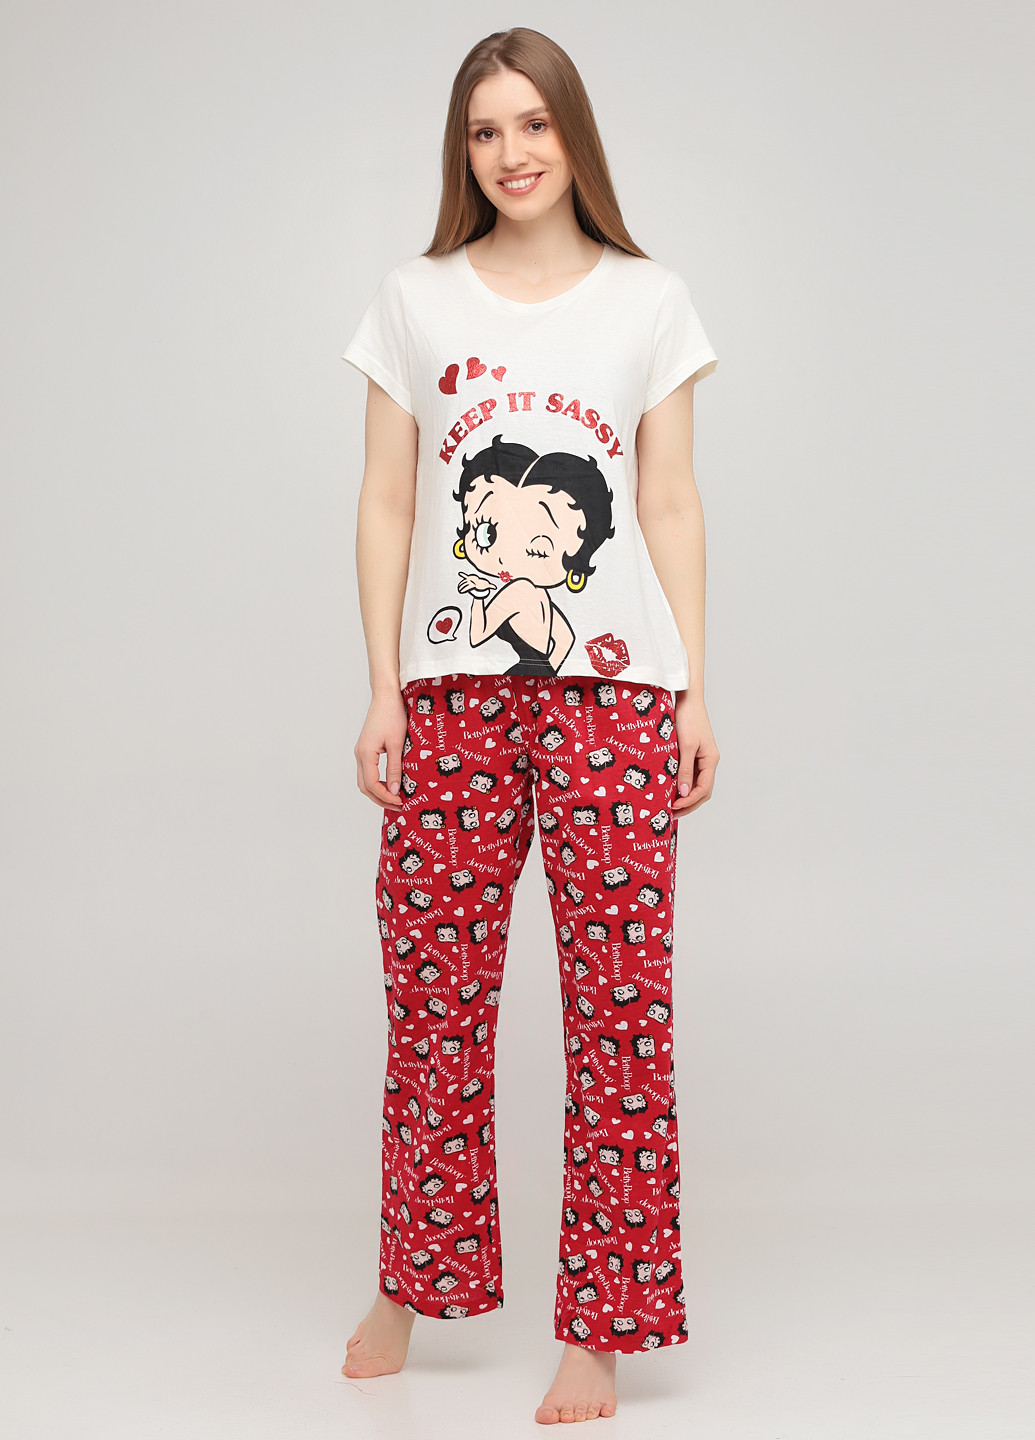 Комбинированная всесезон пижама (футболка, брюки) футболка + брюки Betty Boop